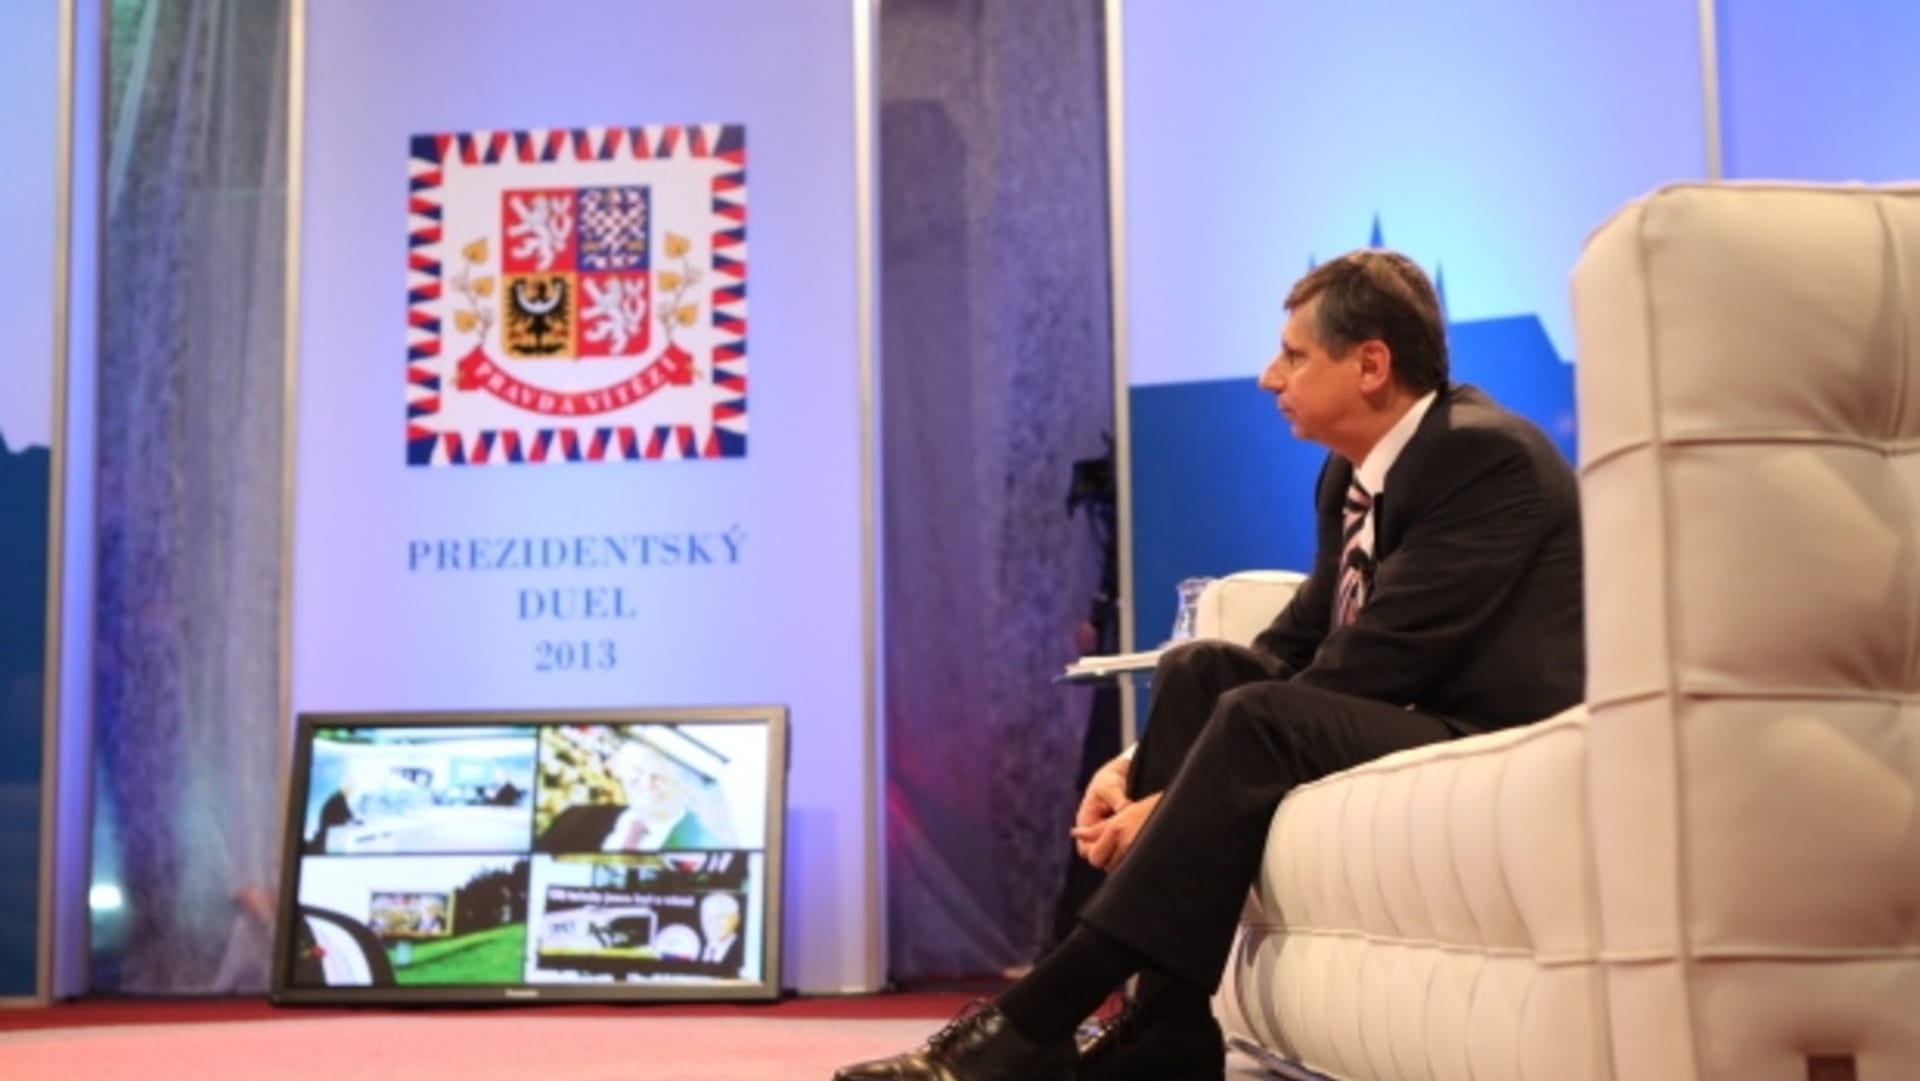 Prezidentský duel - Miloš Zeman a Jan Fisher - Obrázek 11